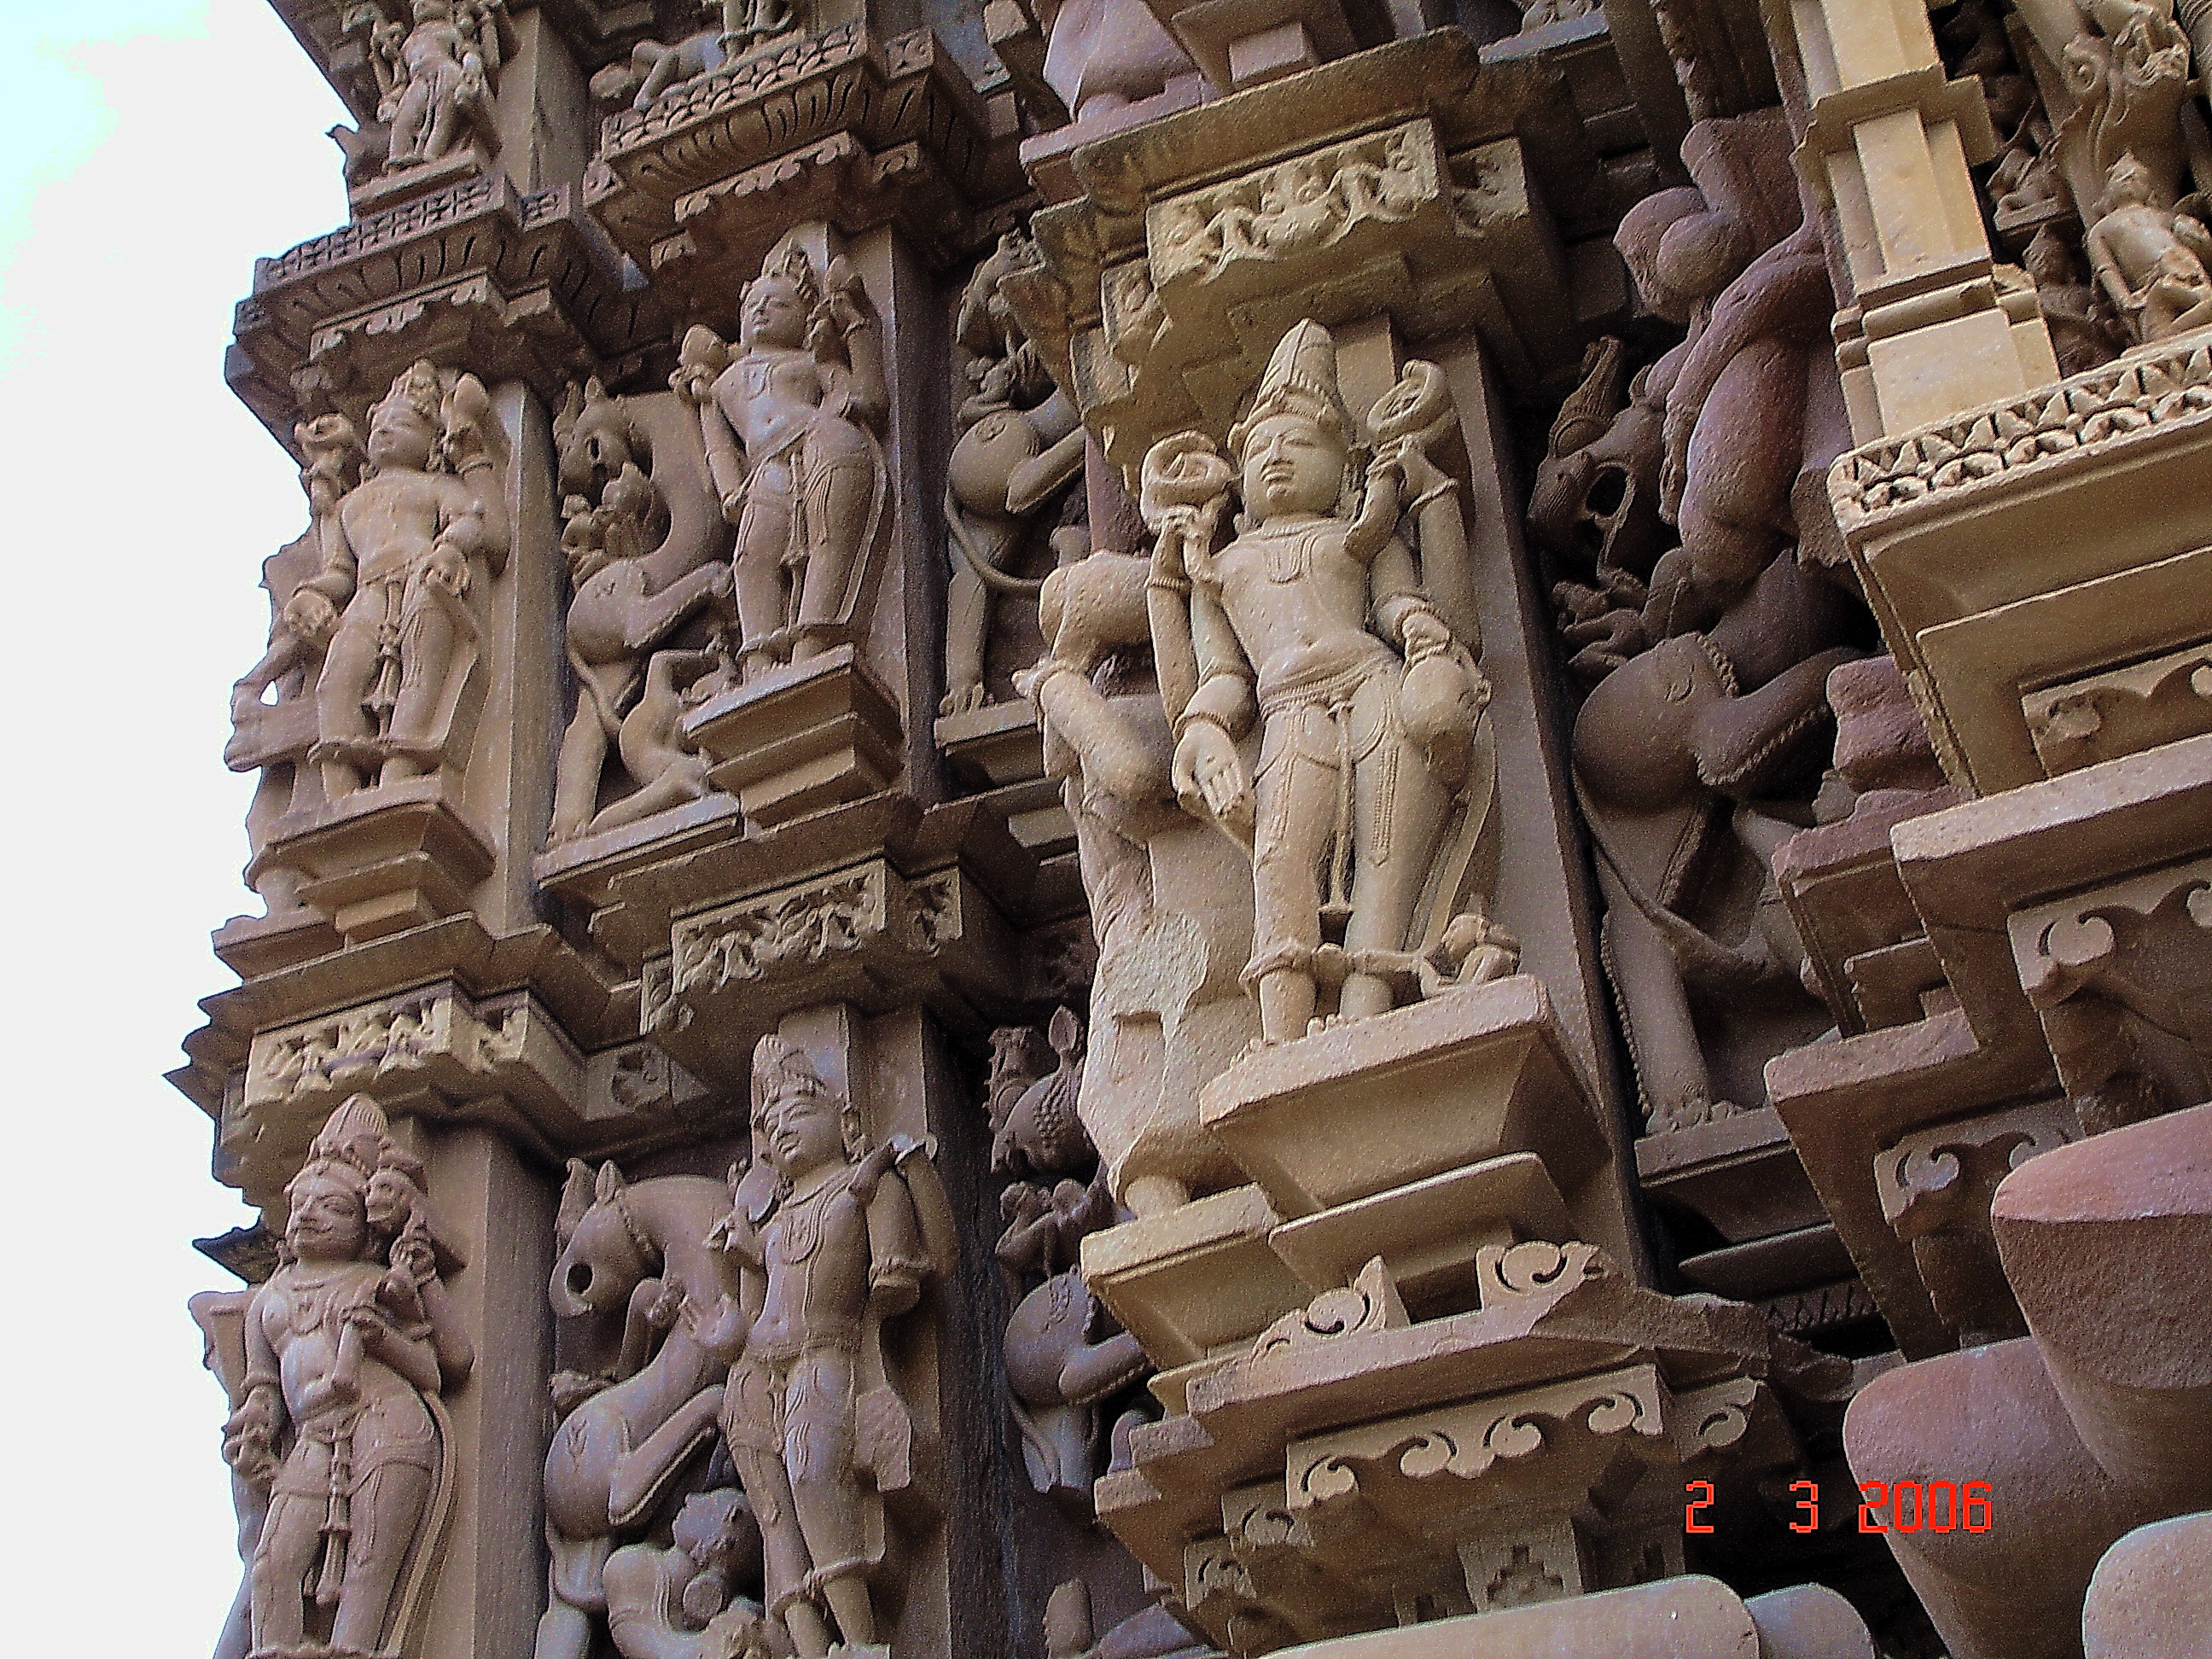 Храм любви в индии смотреть фото барельефов